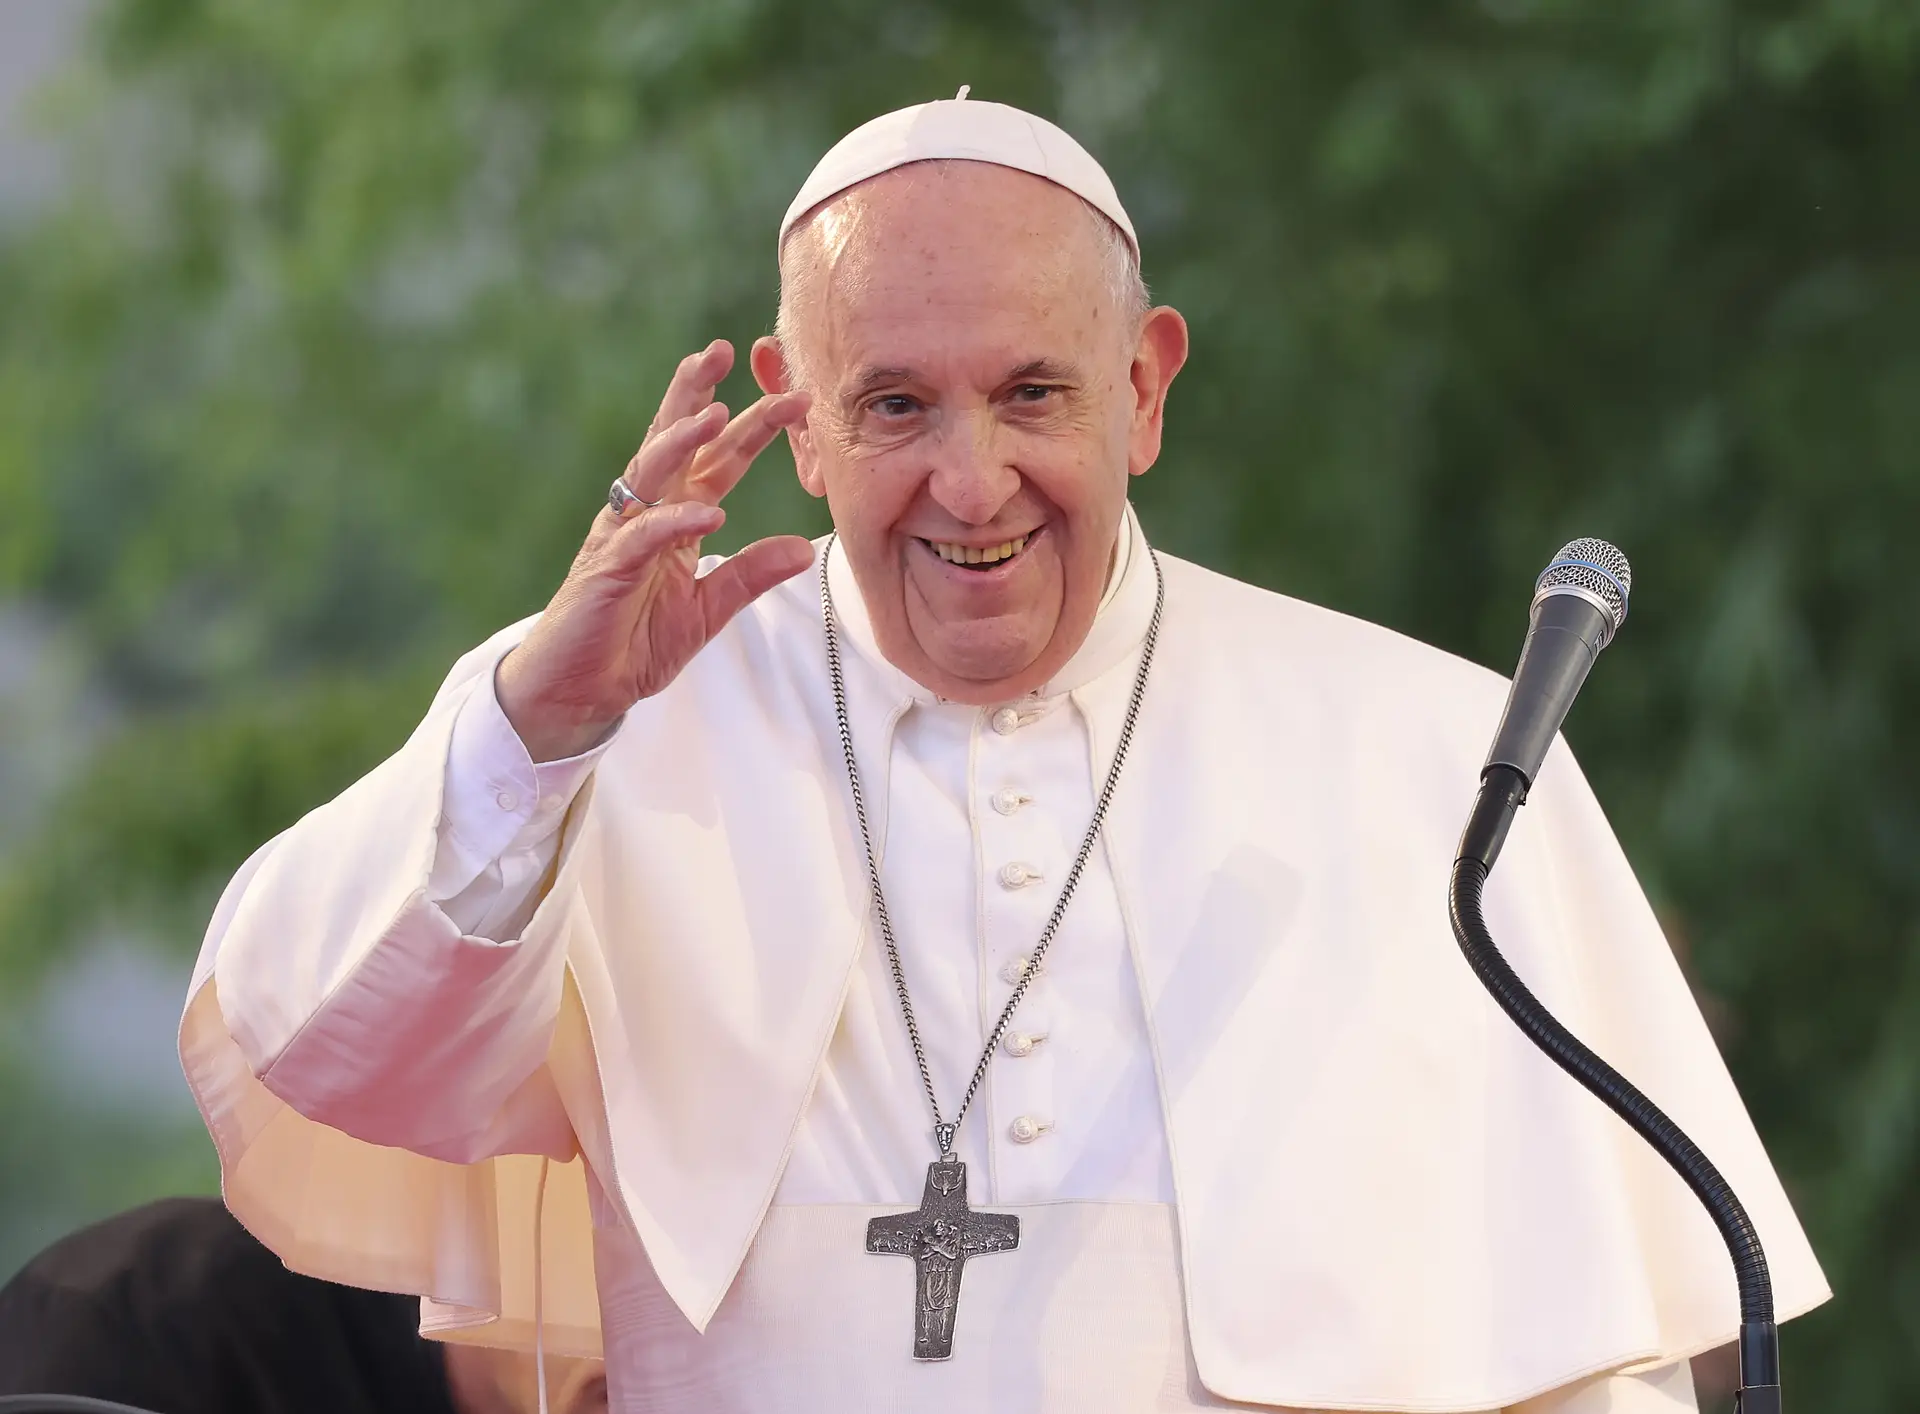 Governo permite ajustes diretos para visita do Papa. E dispensa visto prévio do Tribunal de Contas